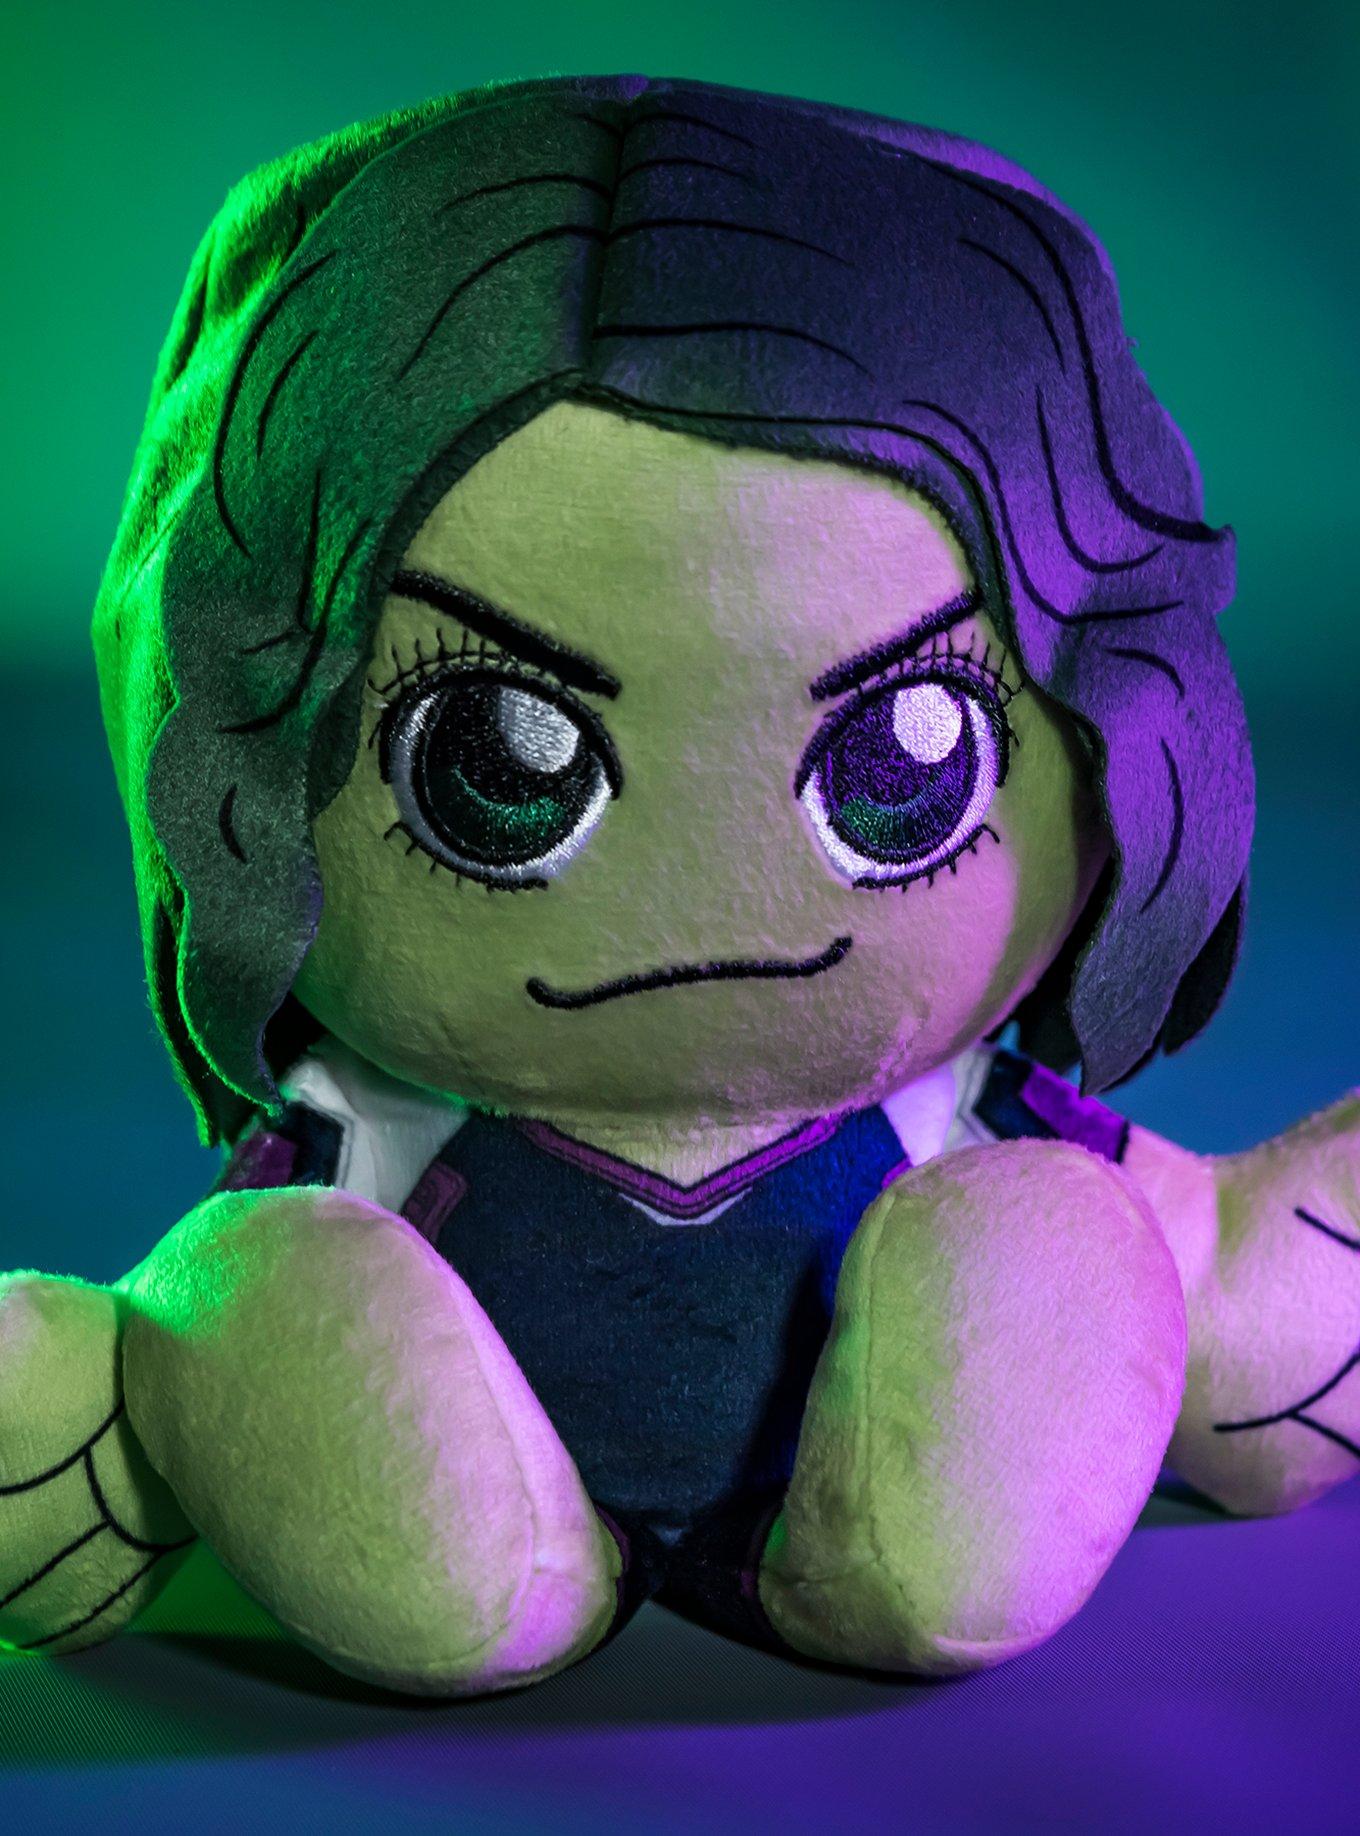 Marvel She-Hulk Kuricha Sitting Plush, , alternate